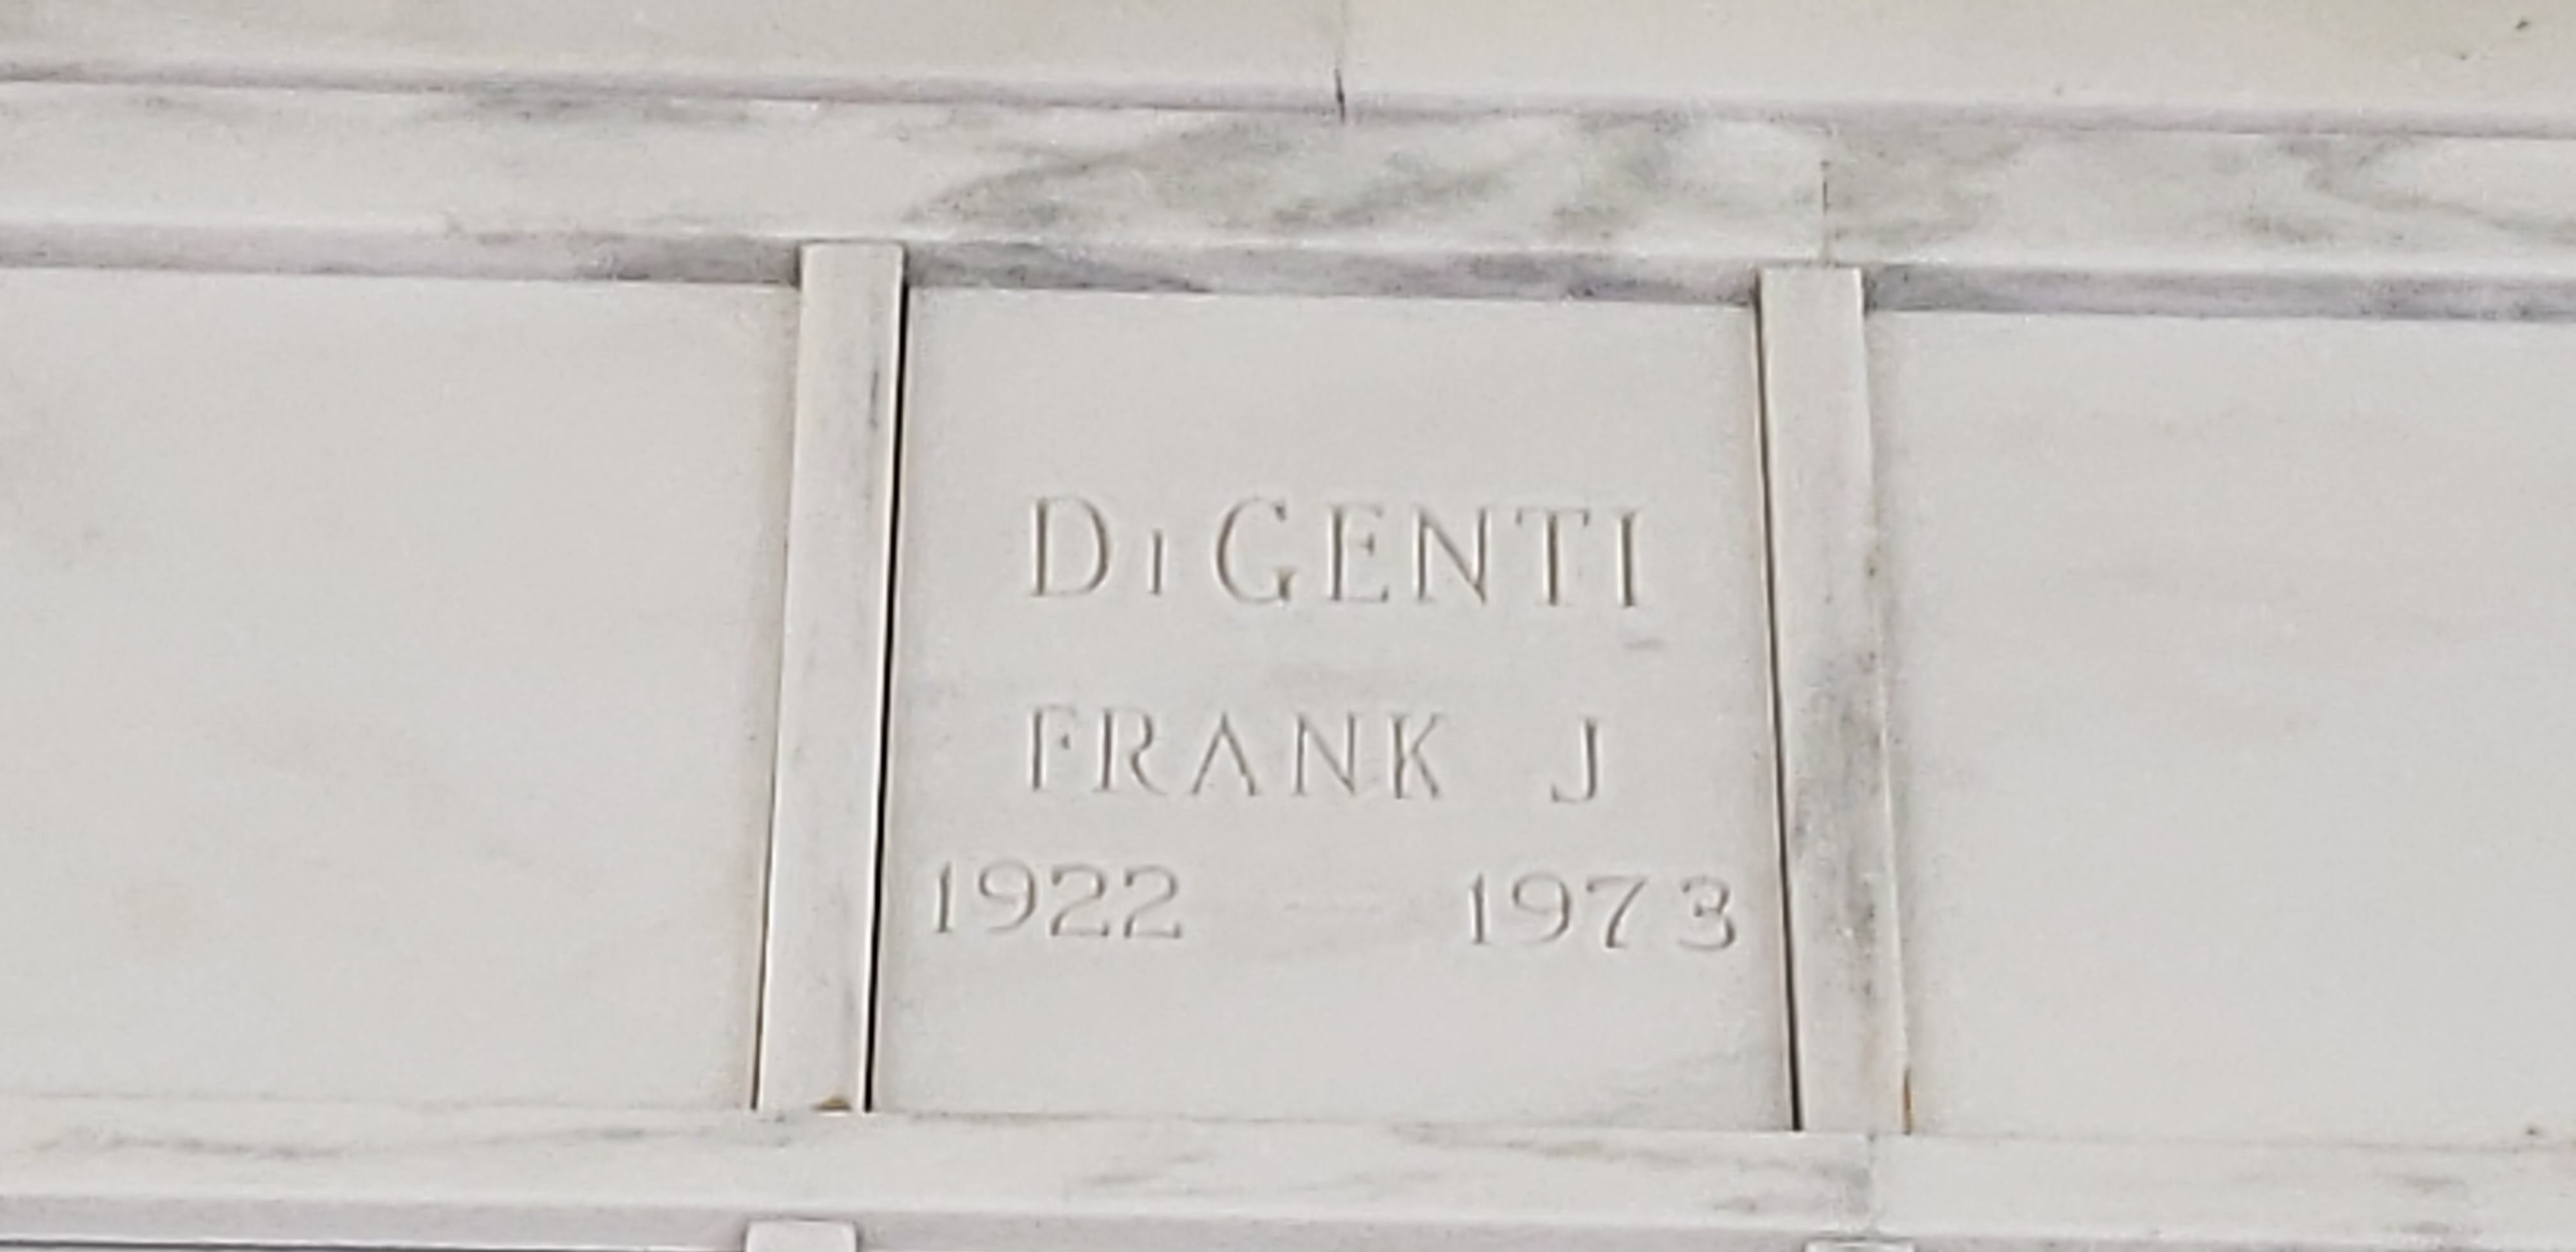 Frank J Digenti